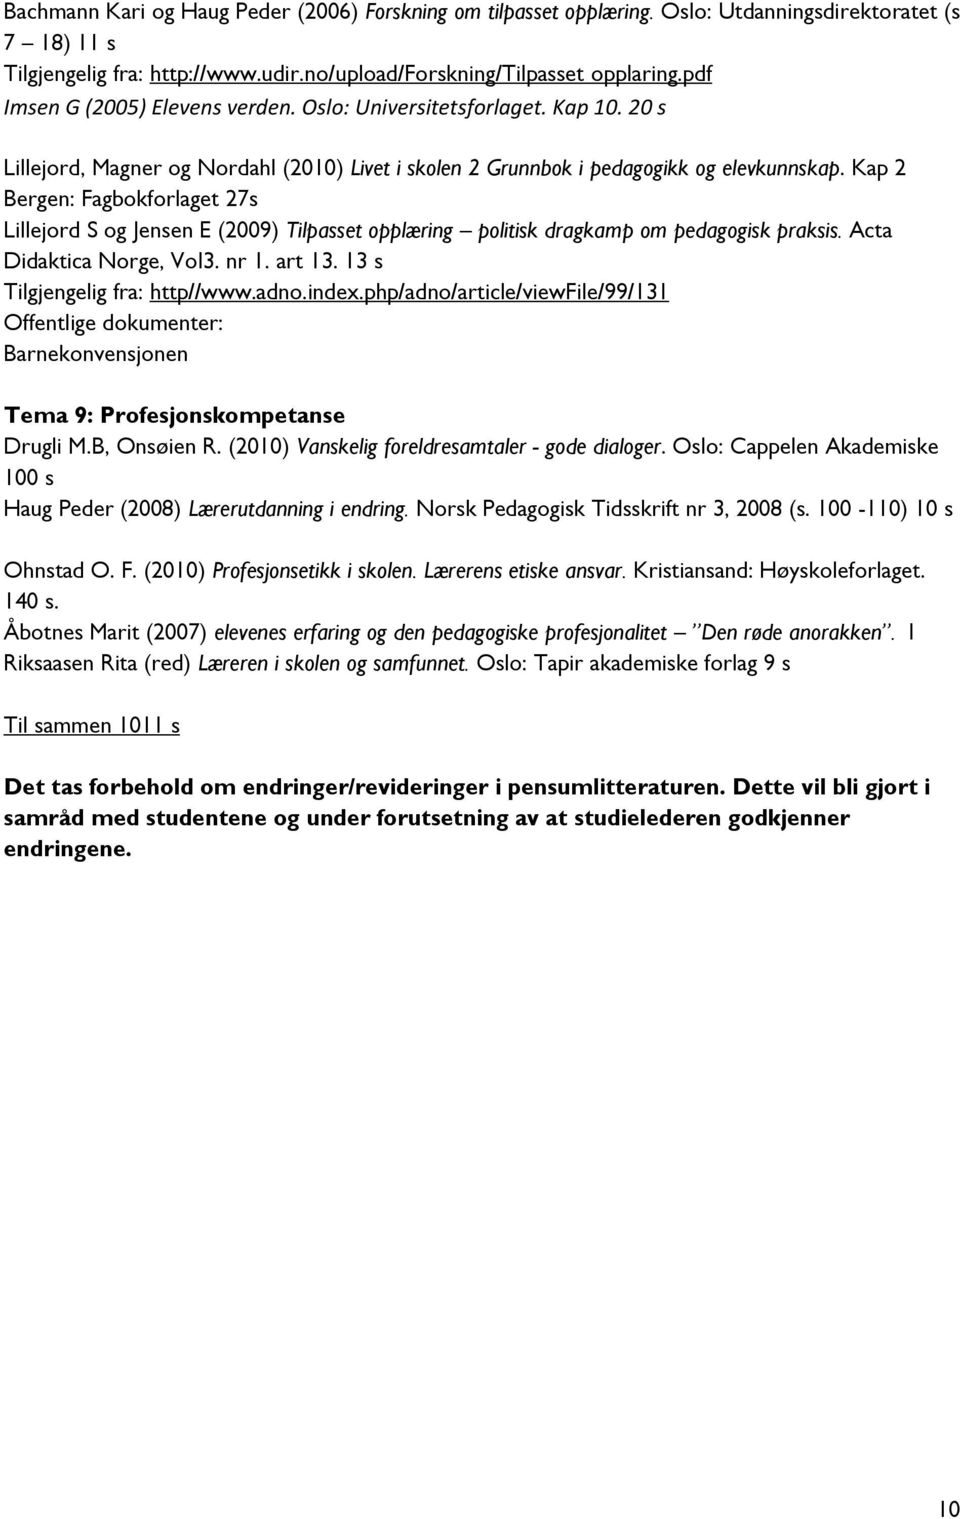 Kap 2 Bergen: Fagbokforlaget 27s Lillejord S og Jensen E (2009) Tilpasset opplæring politisk dragkamp om pedagogisk praksis. Acta Didaktica Norge, Vol3. nr 1. art 13. 13 s Tilgjengelig fra: http//www.